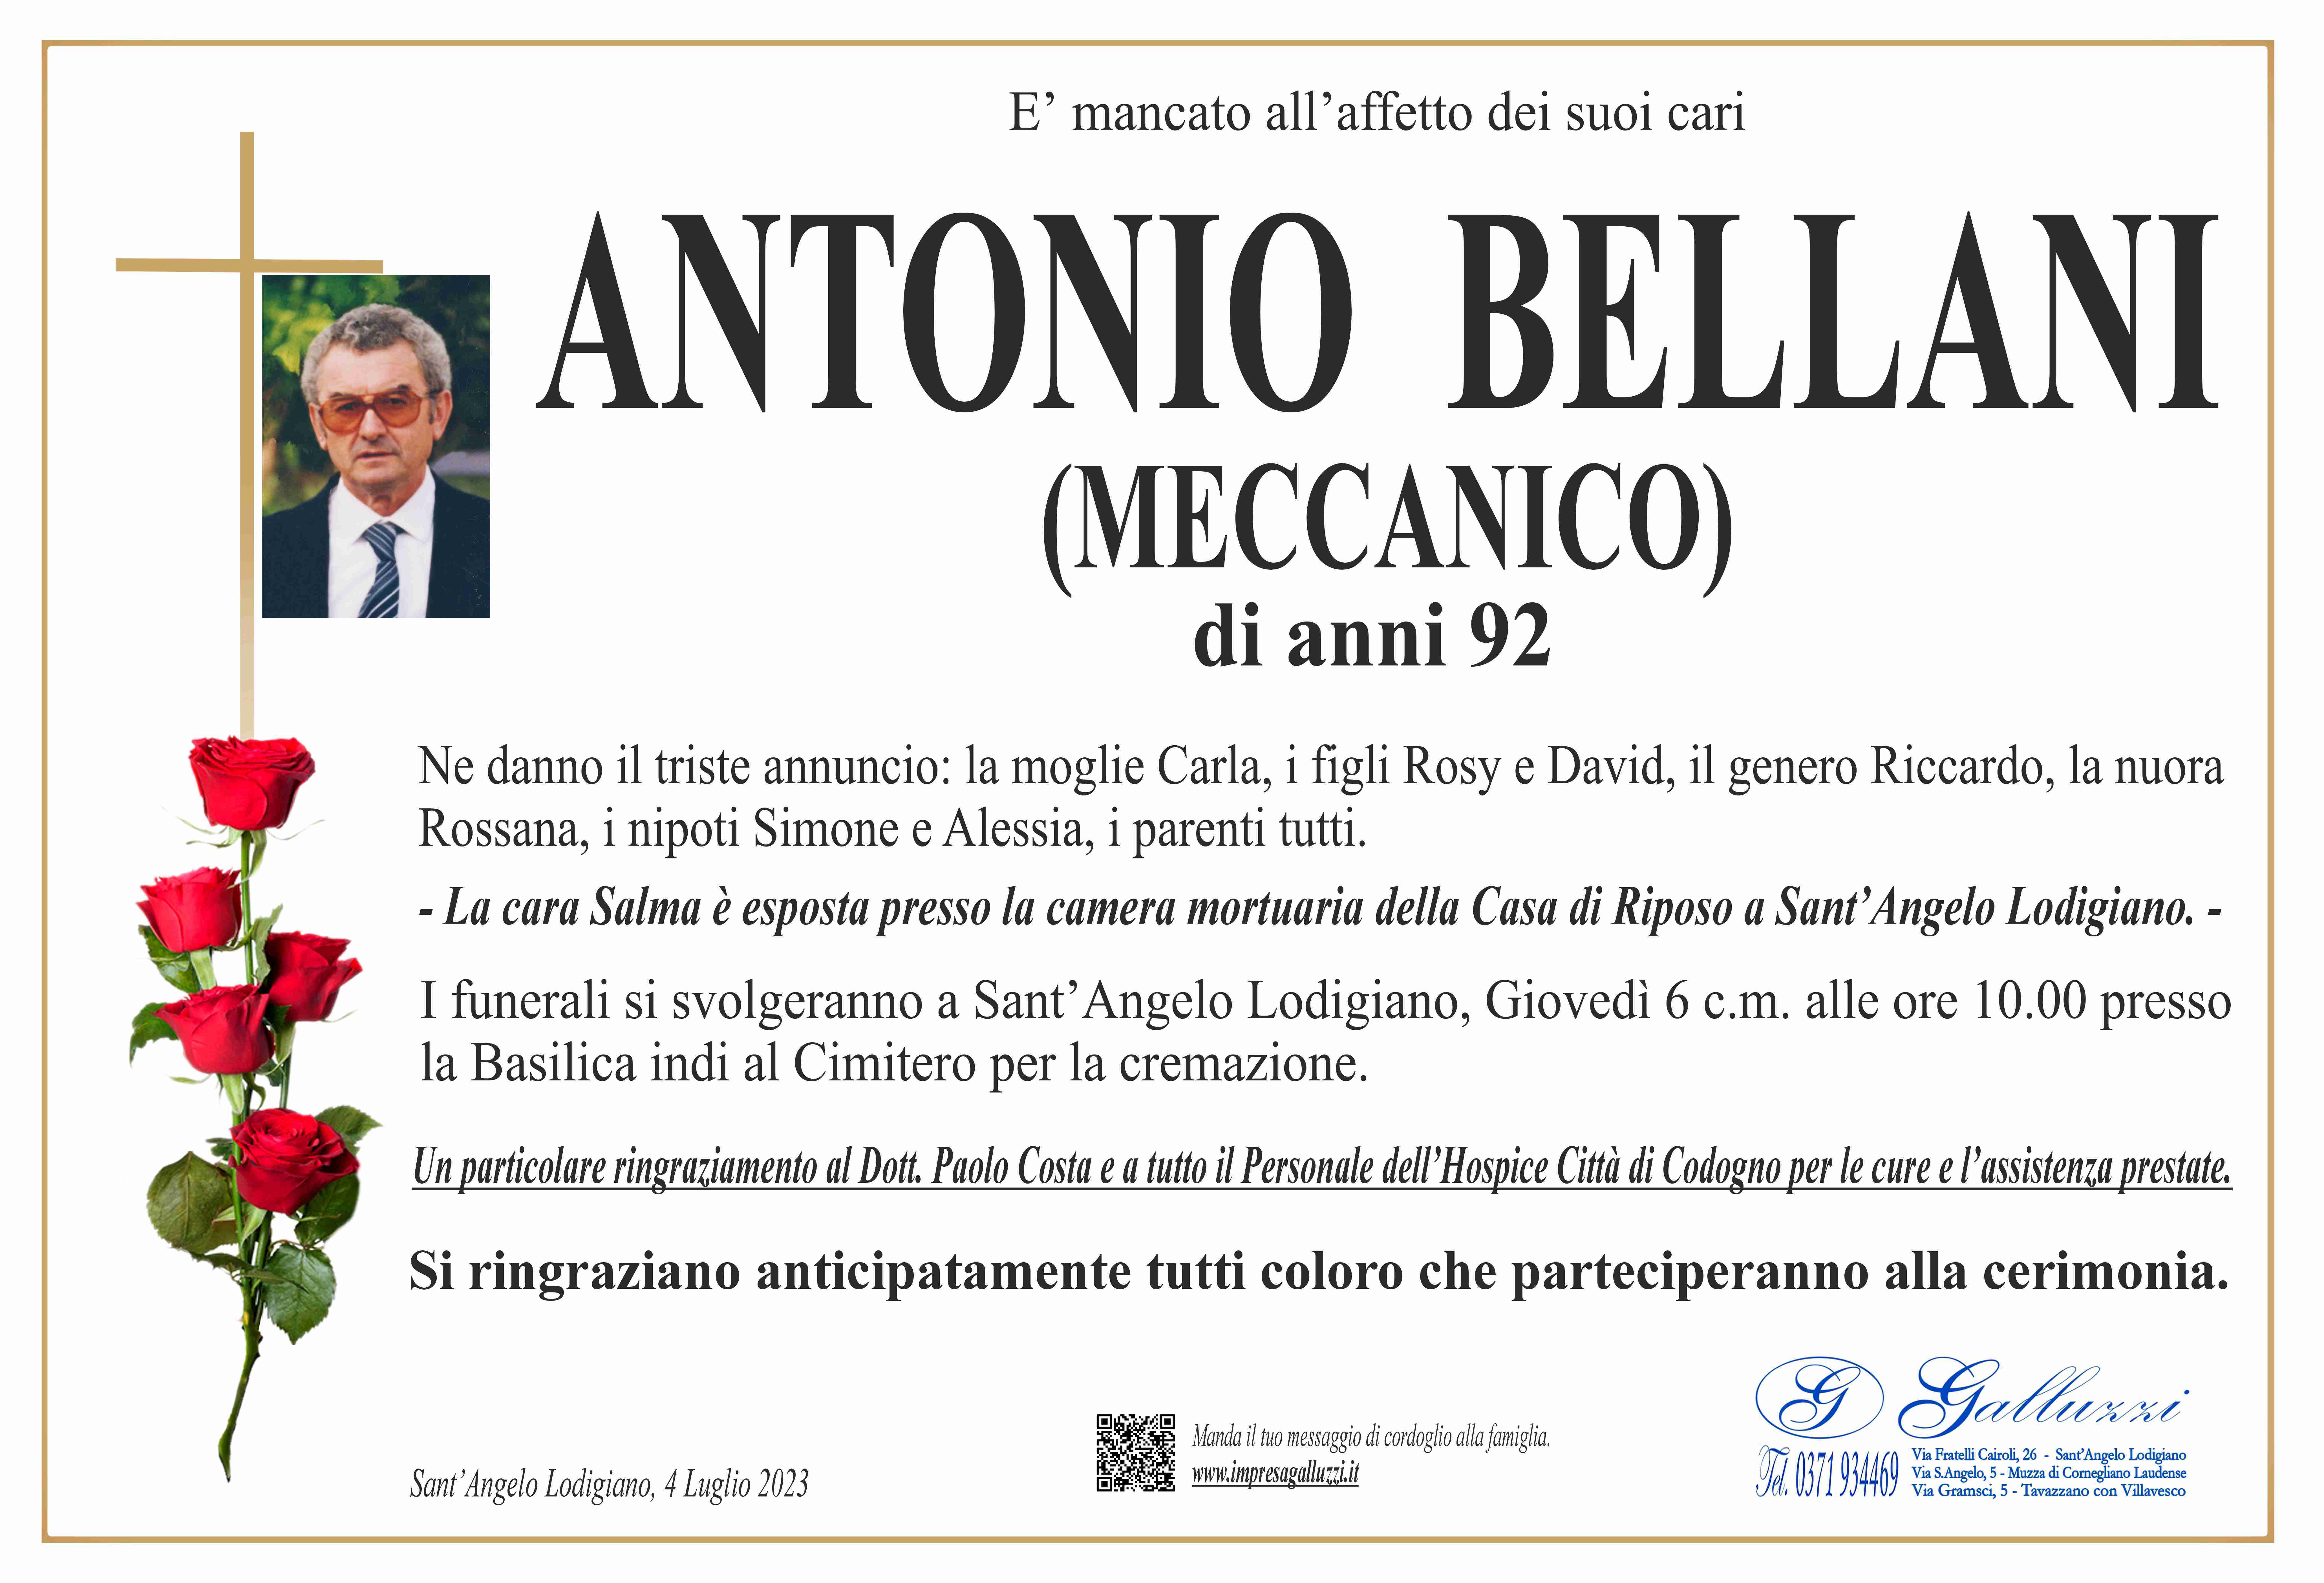 Antonio Bellani